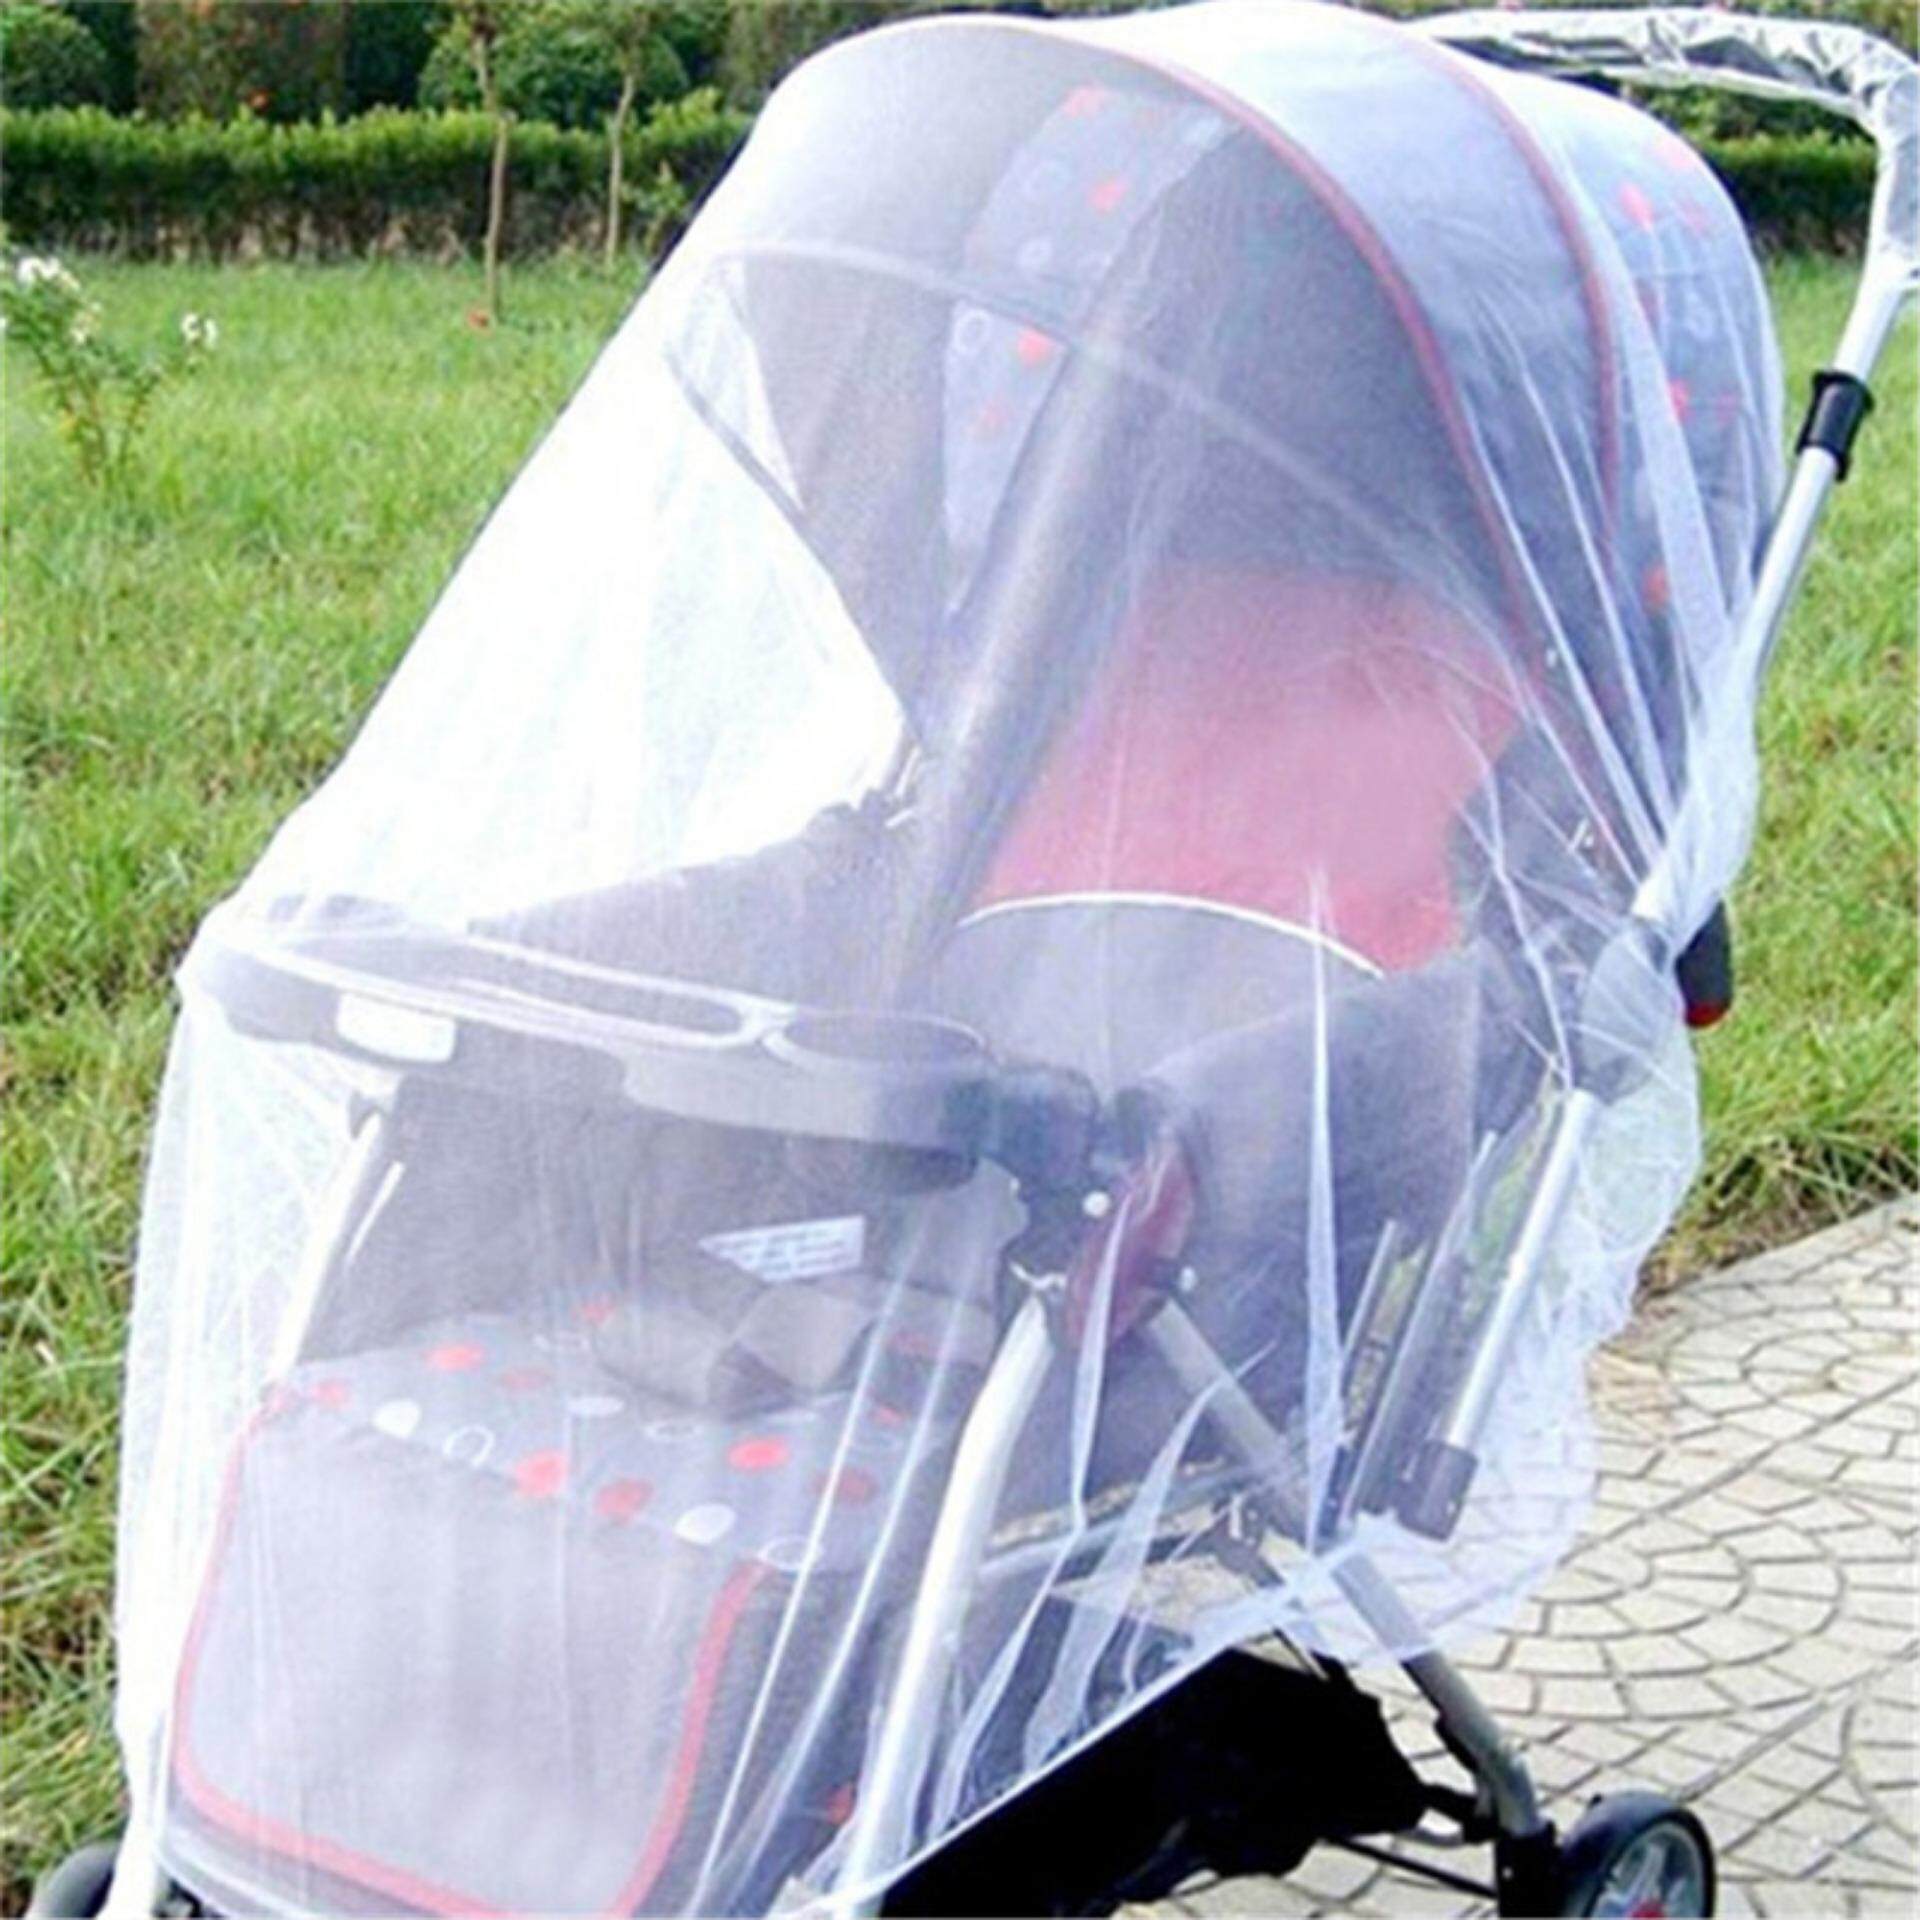 ทารกแรกเกิดรถเข็นเด็กทารก Crip สุทธิรถเข็นเด็กแมลงยุงสุทธิตาข่ายปลอดภัย